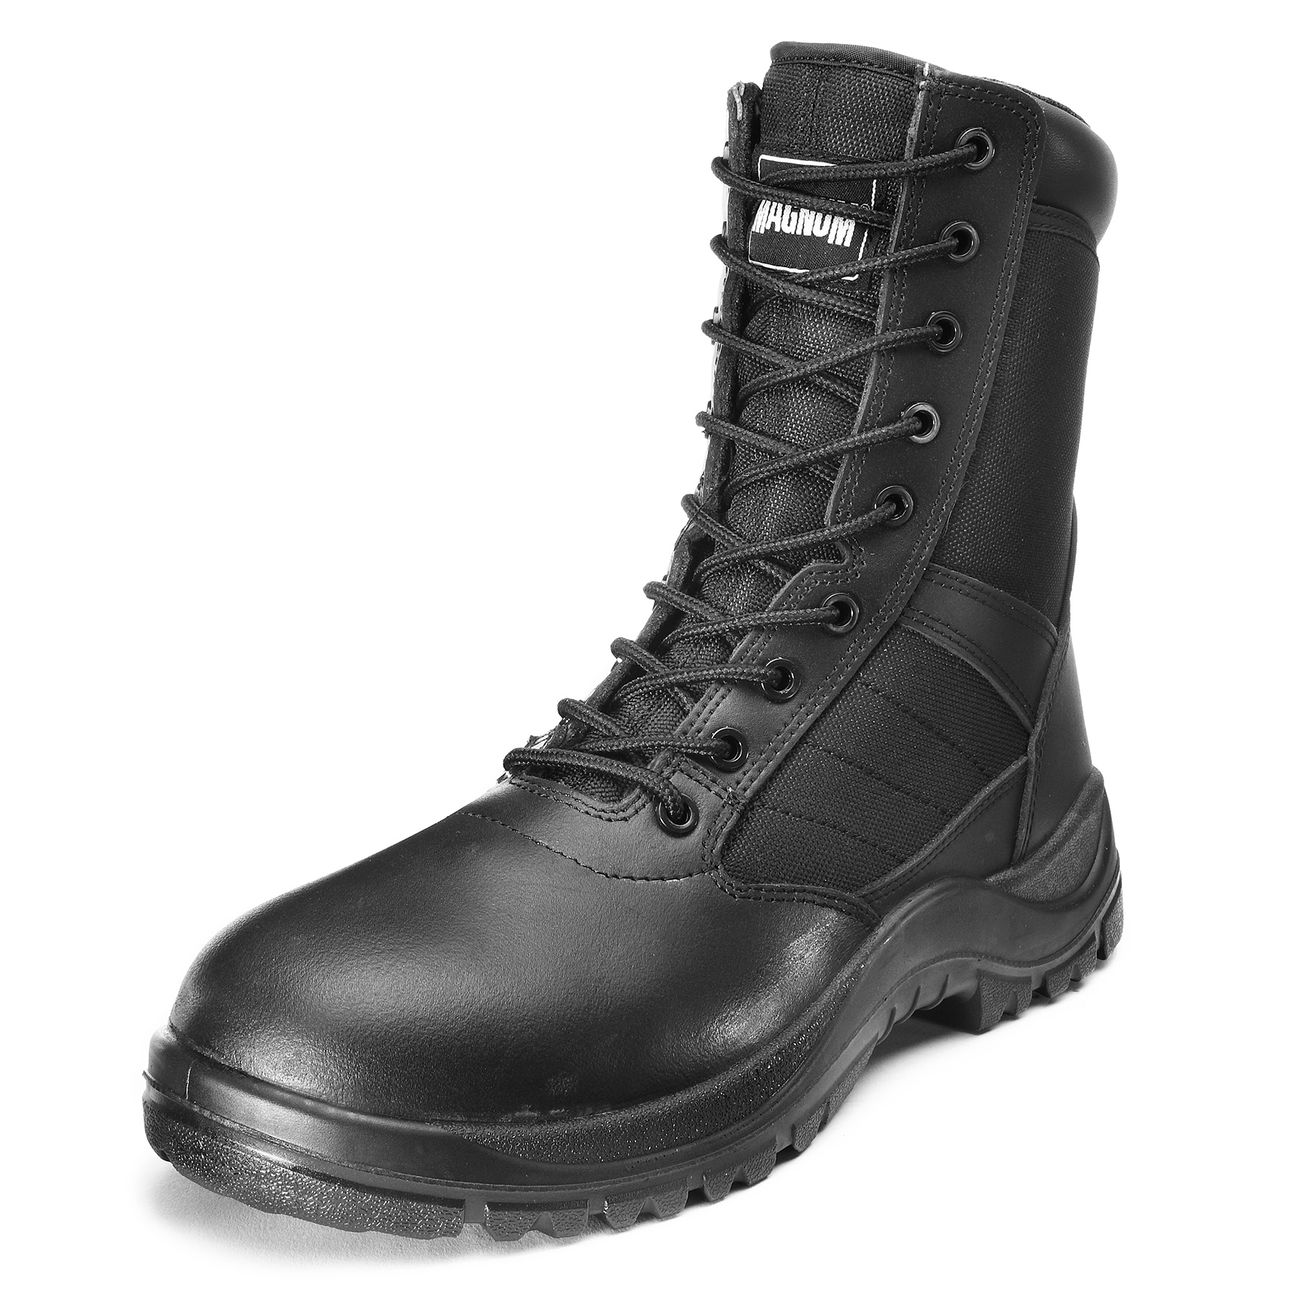 MAGNUM Hi-Tec Leder Cobra 8.0 Stiefel Boots Army Schuhe Kampfstiefel 36-48 HiTec 